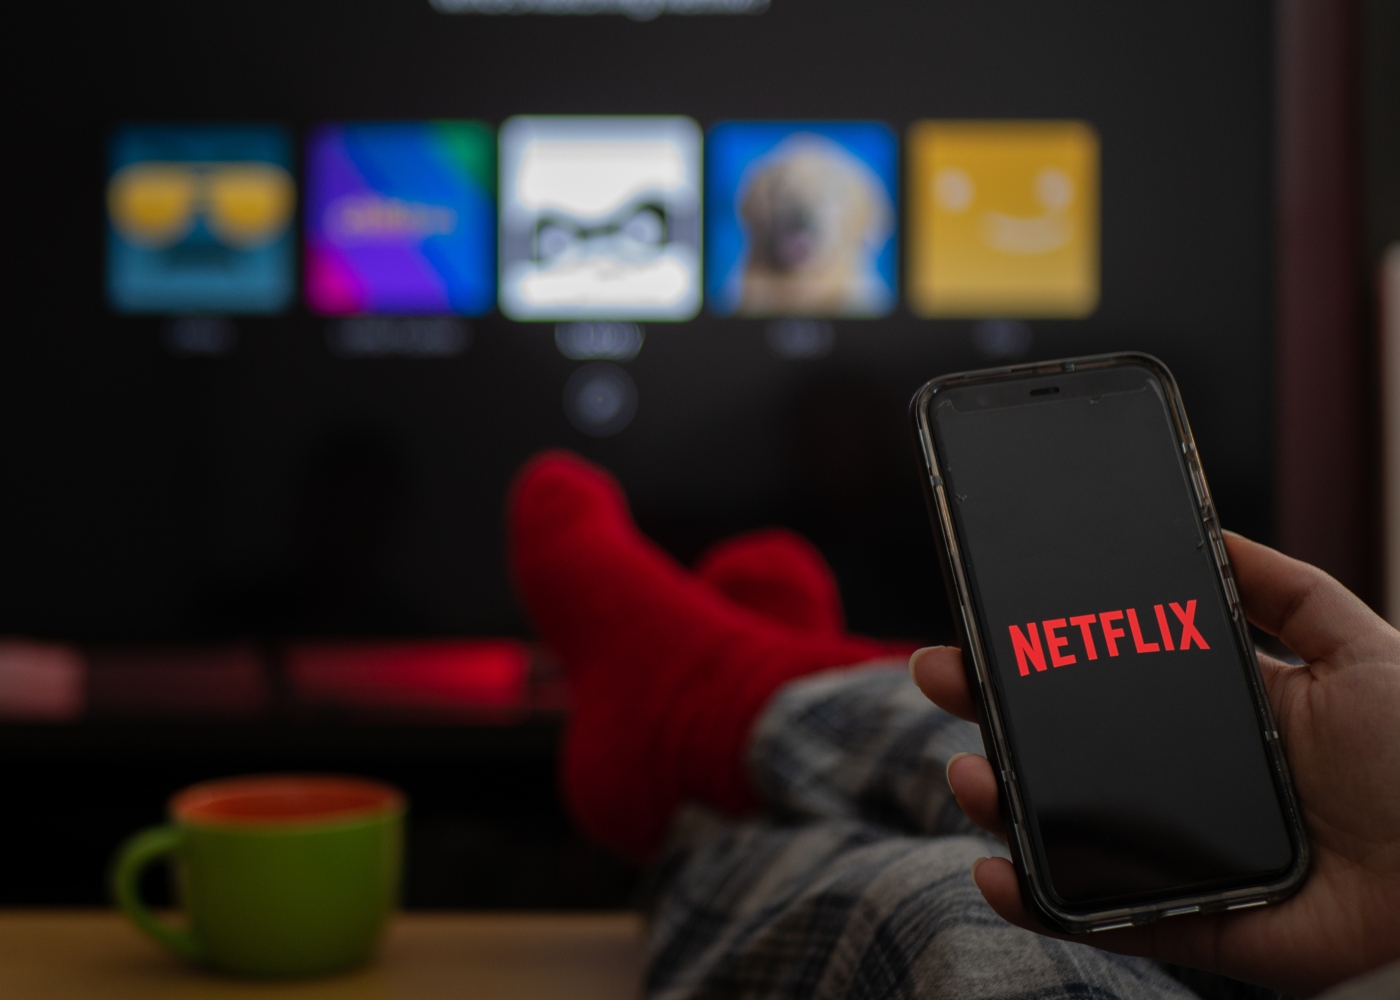 Fim da partilha de contas Netflix em Portugal concretiza-se no dia